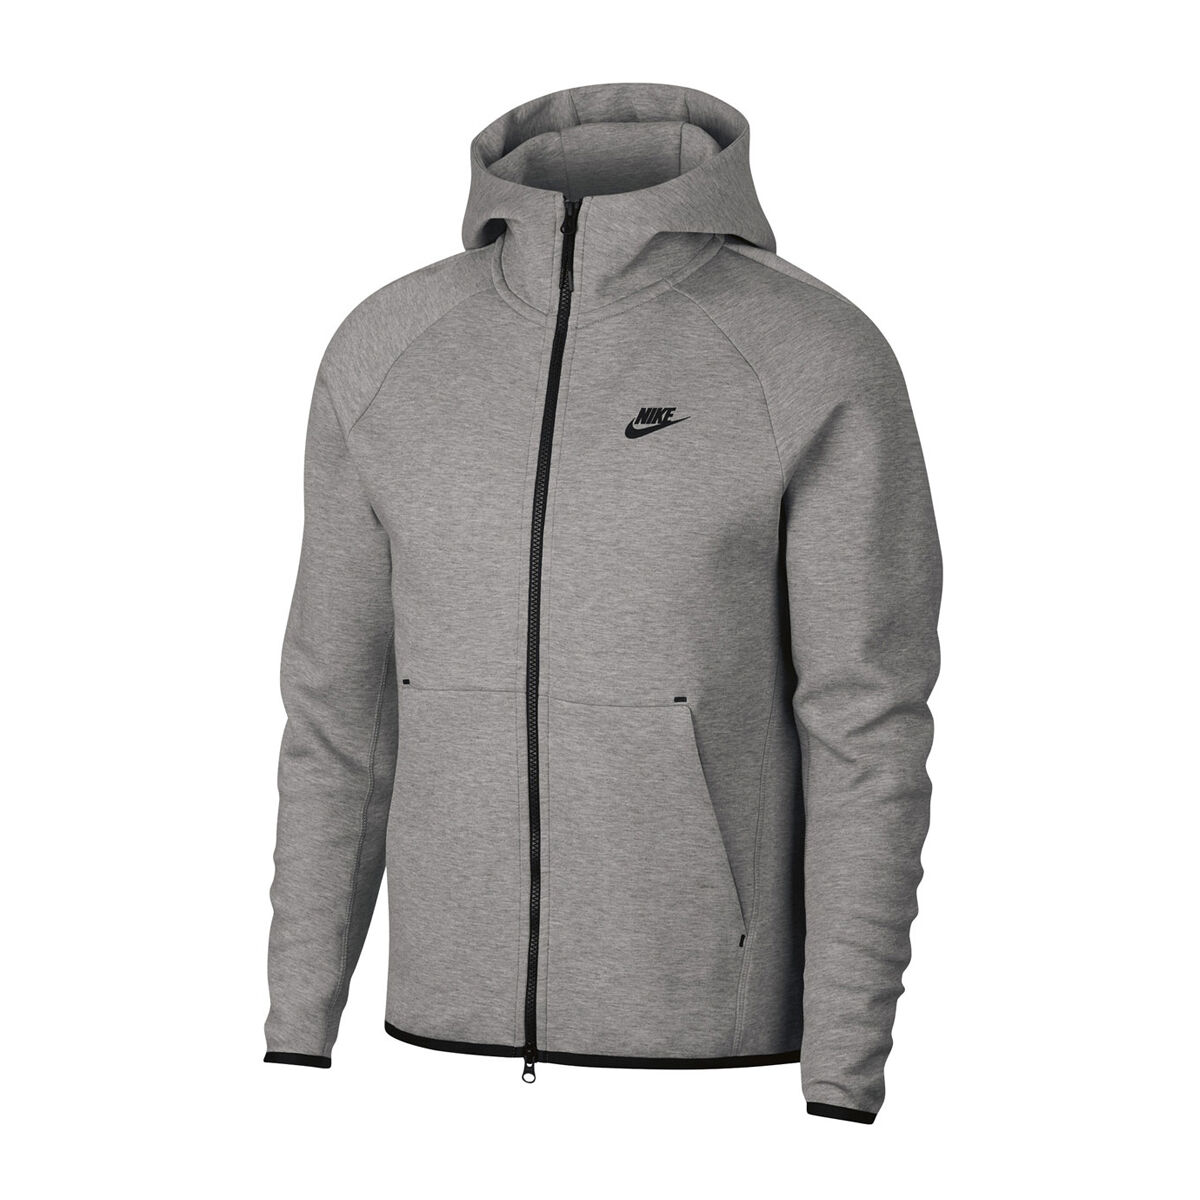 grey nike fleece jacket